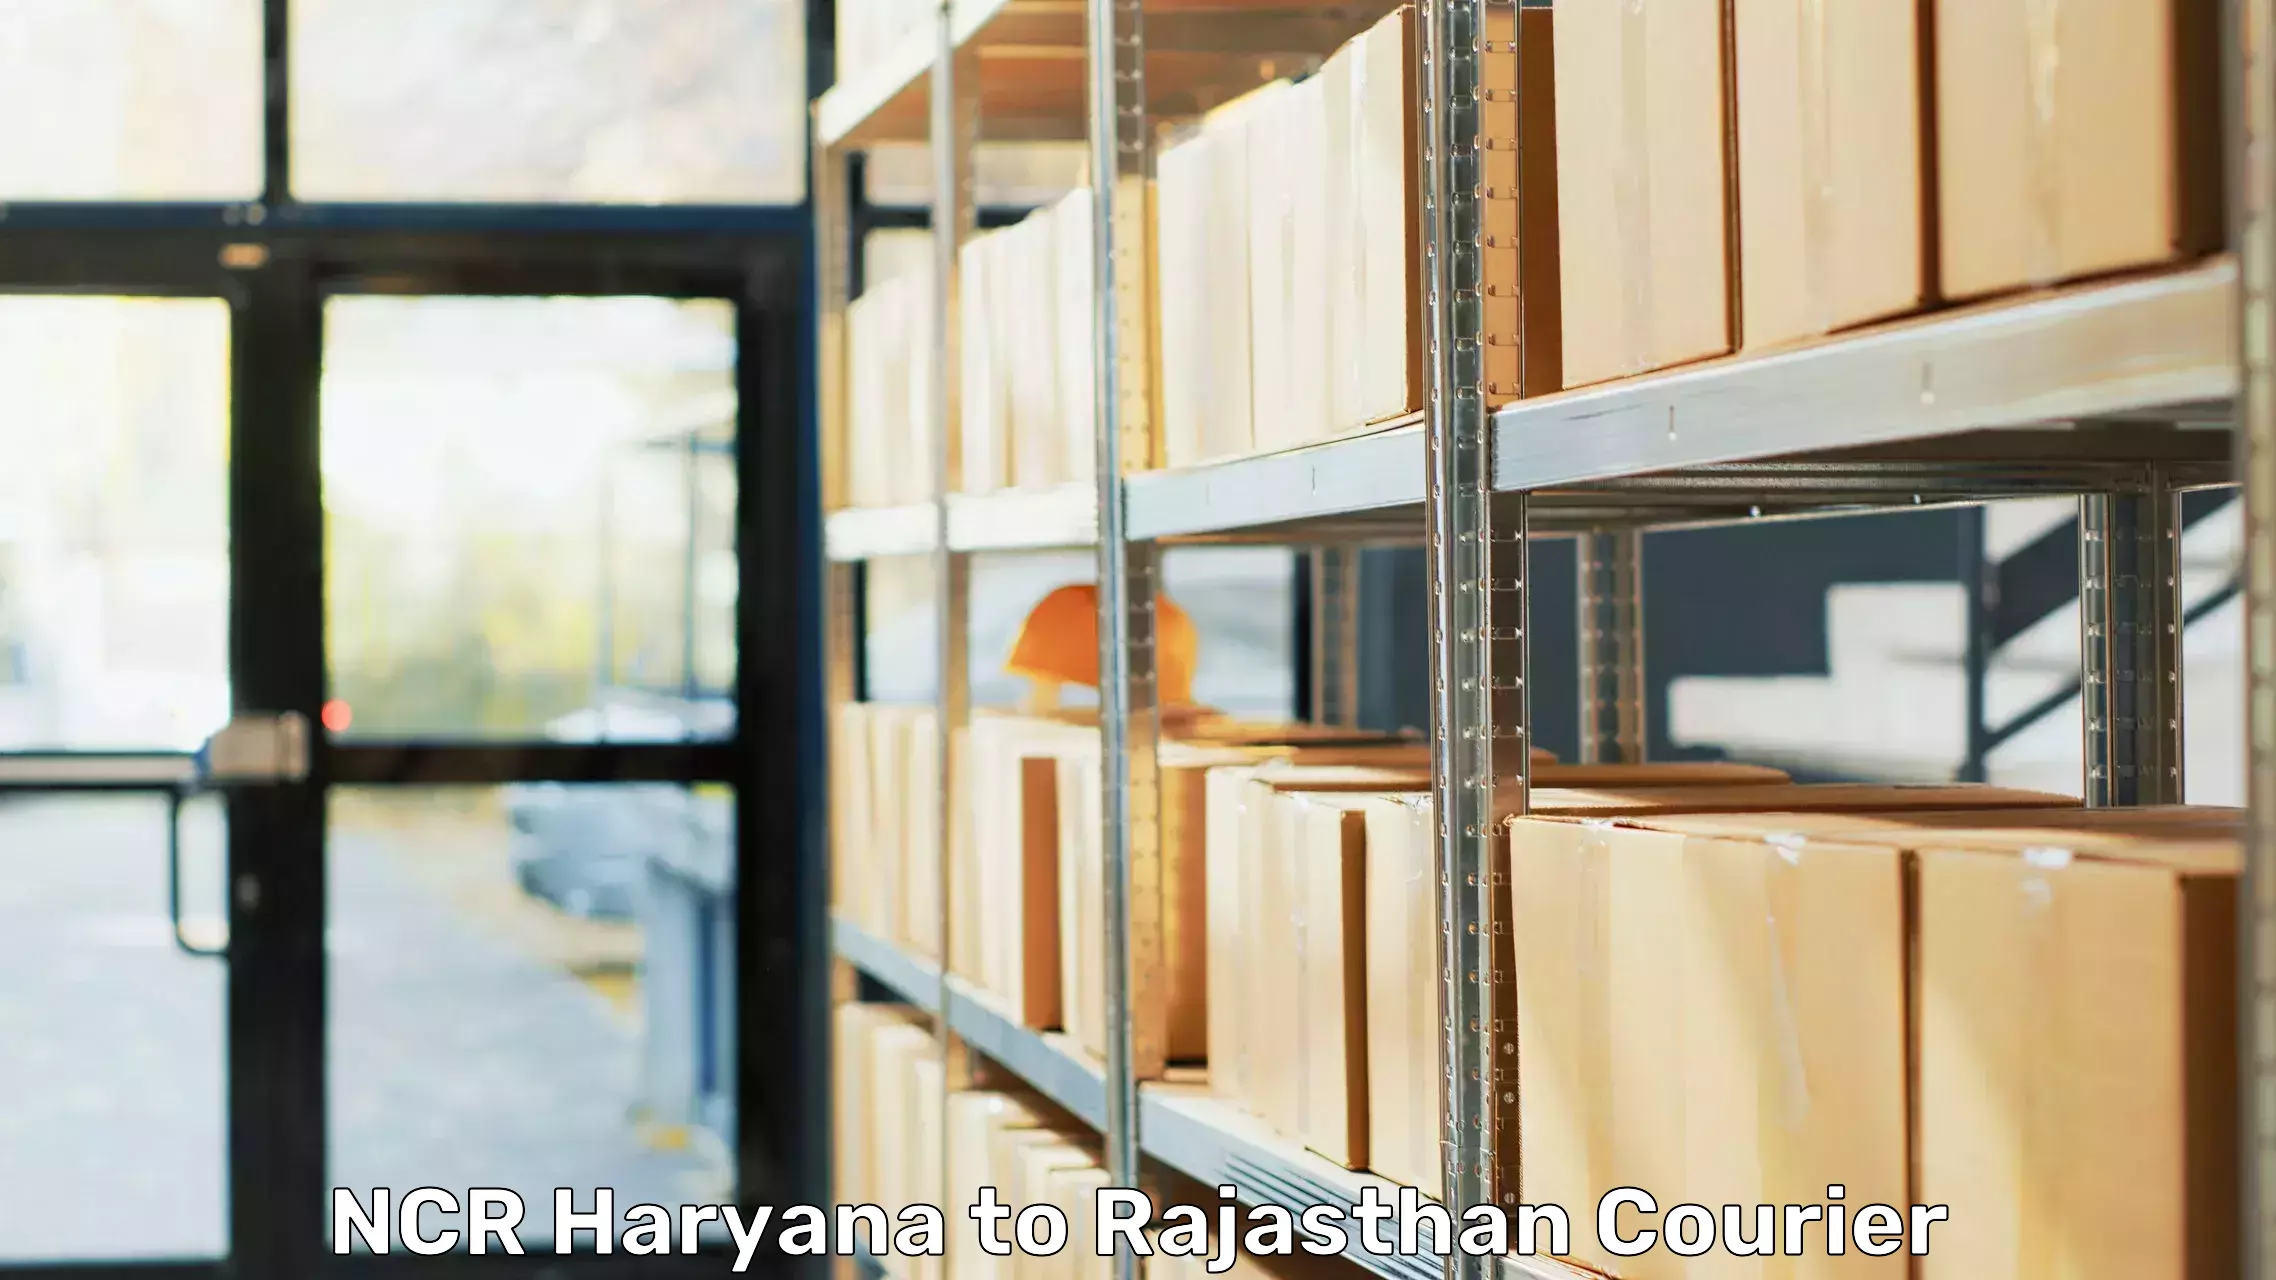 Professional relocation services NCR Haryana to Jhunjhunu